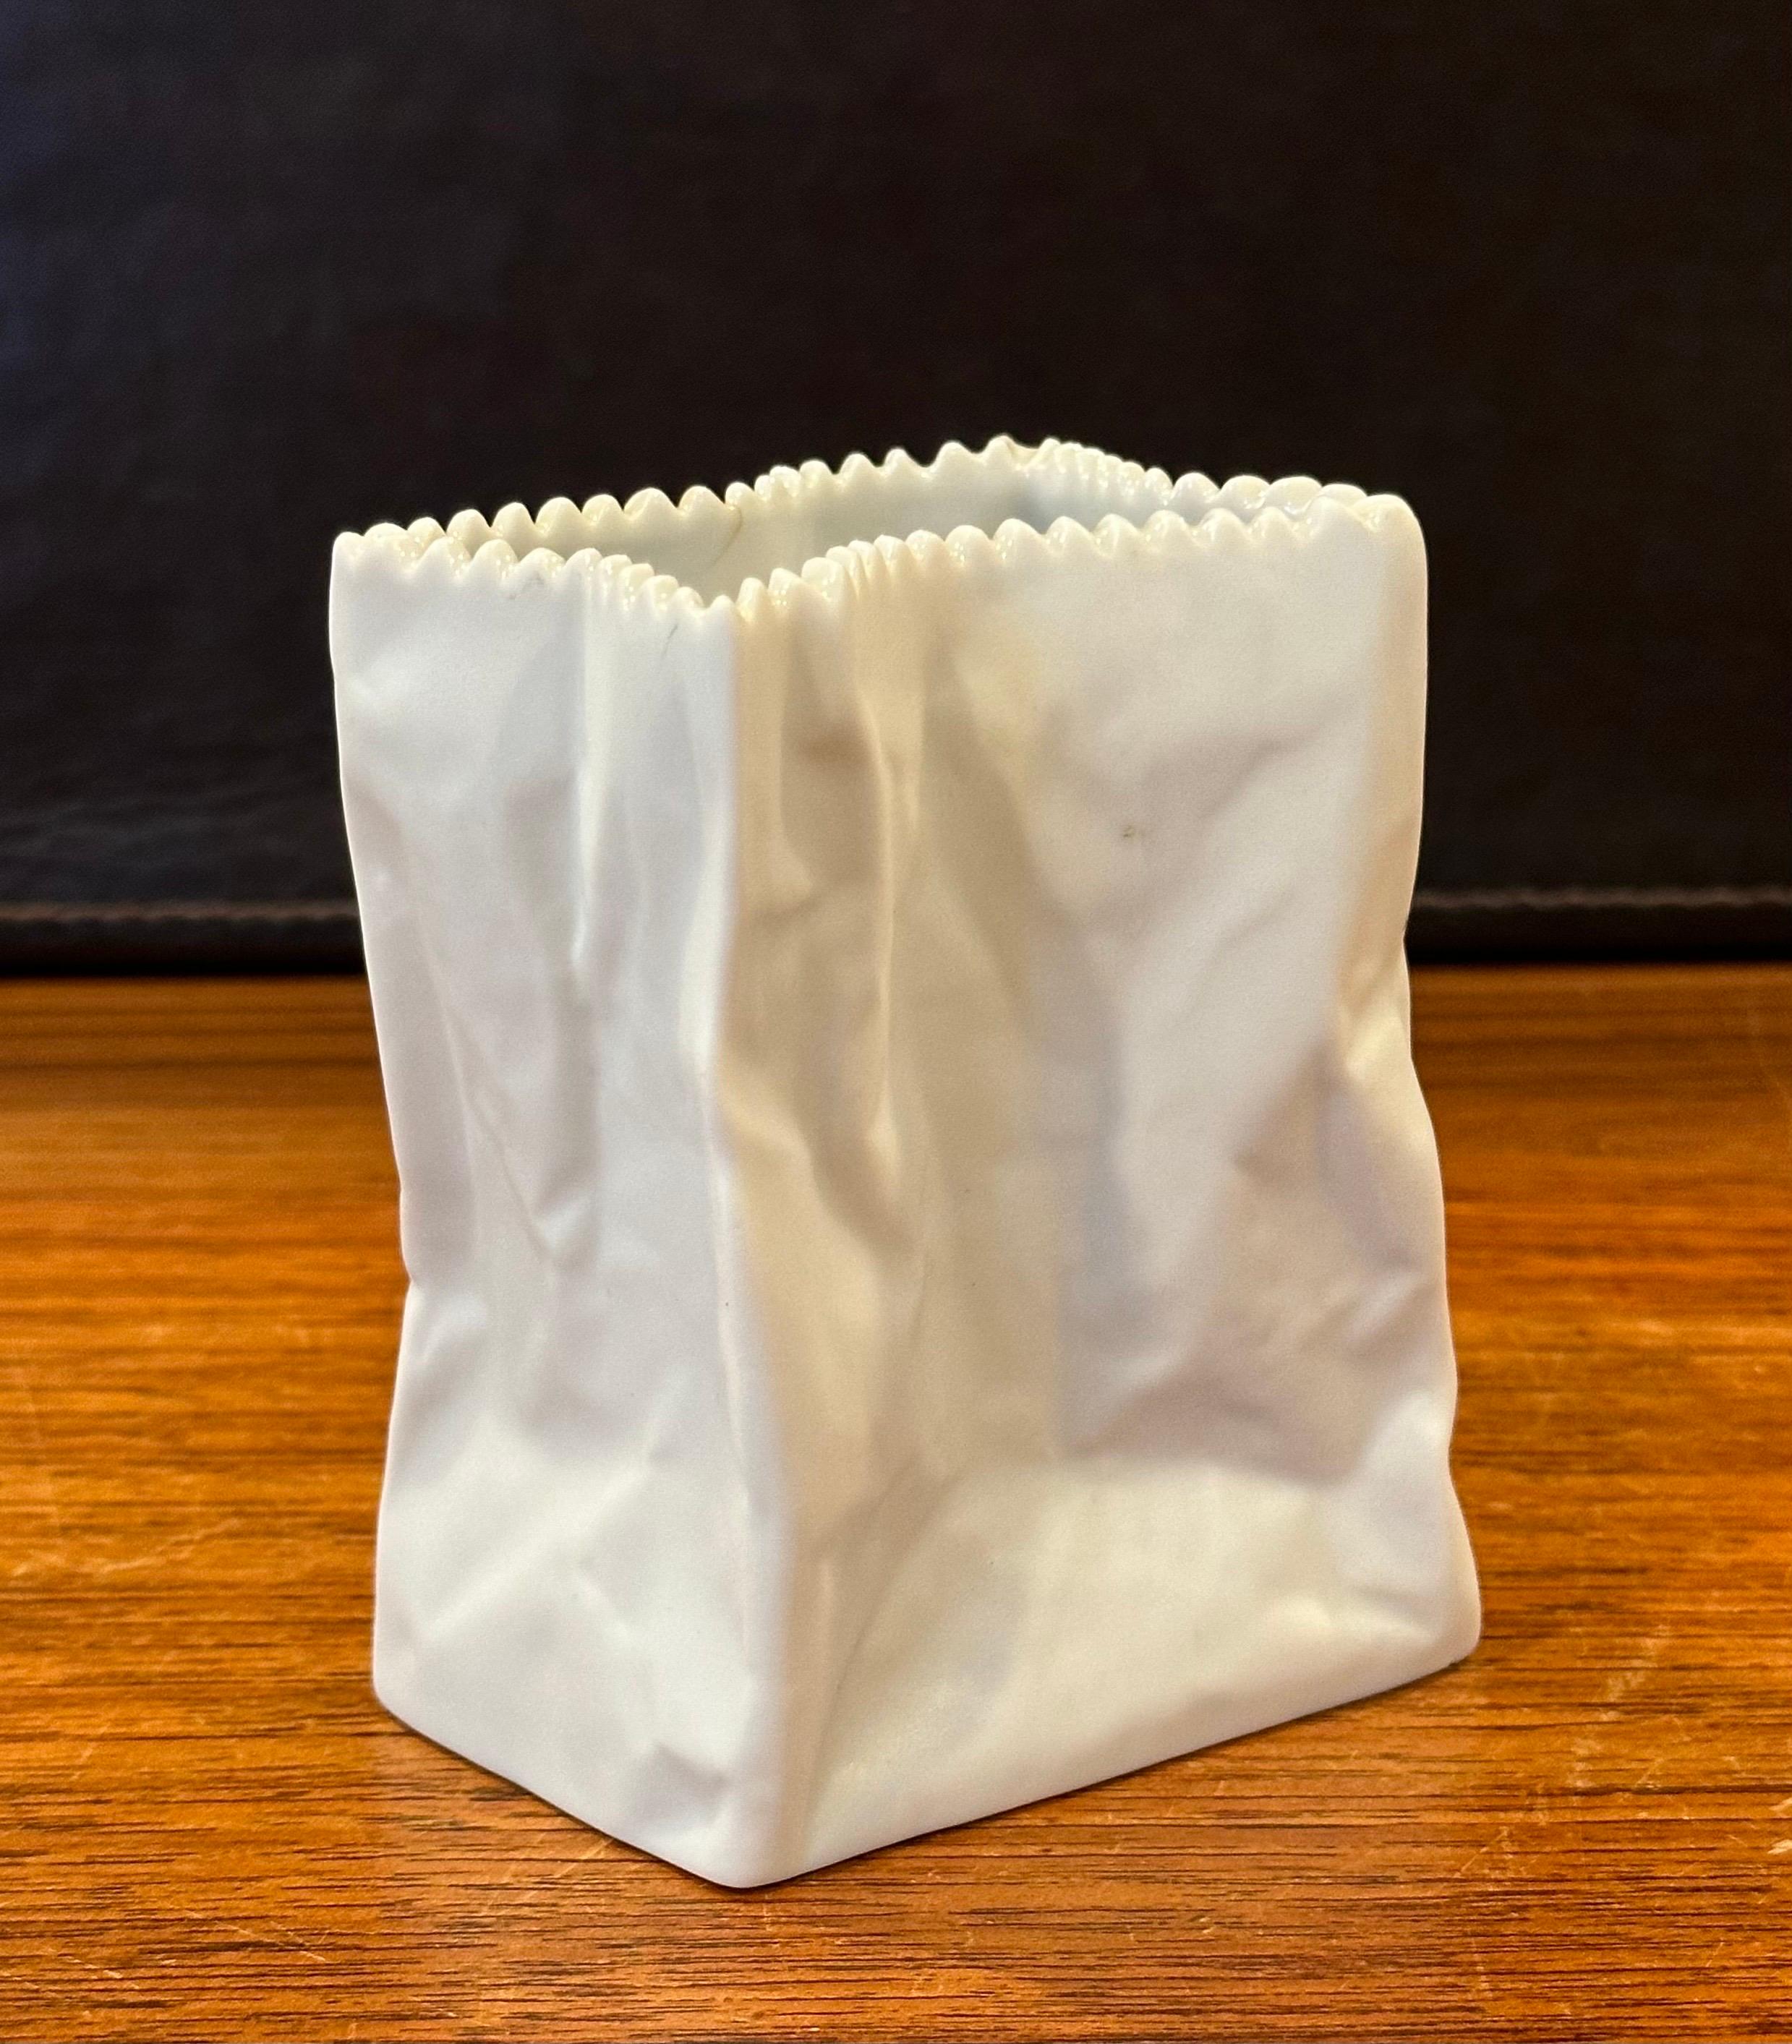 Bisque Porcelain Can & Paper Bag Vases by Rosenthal Studio-Line 